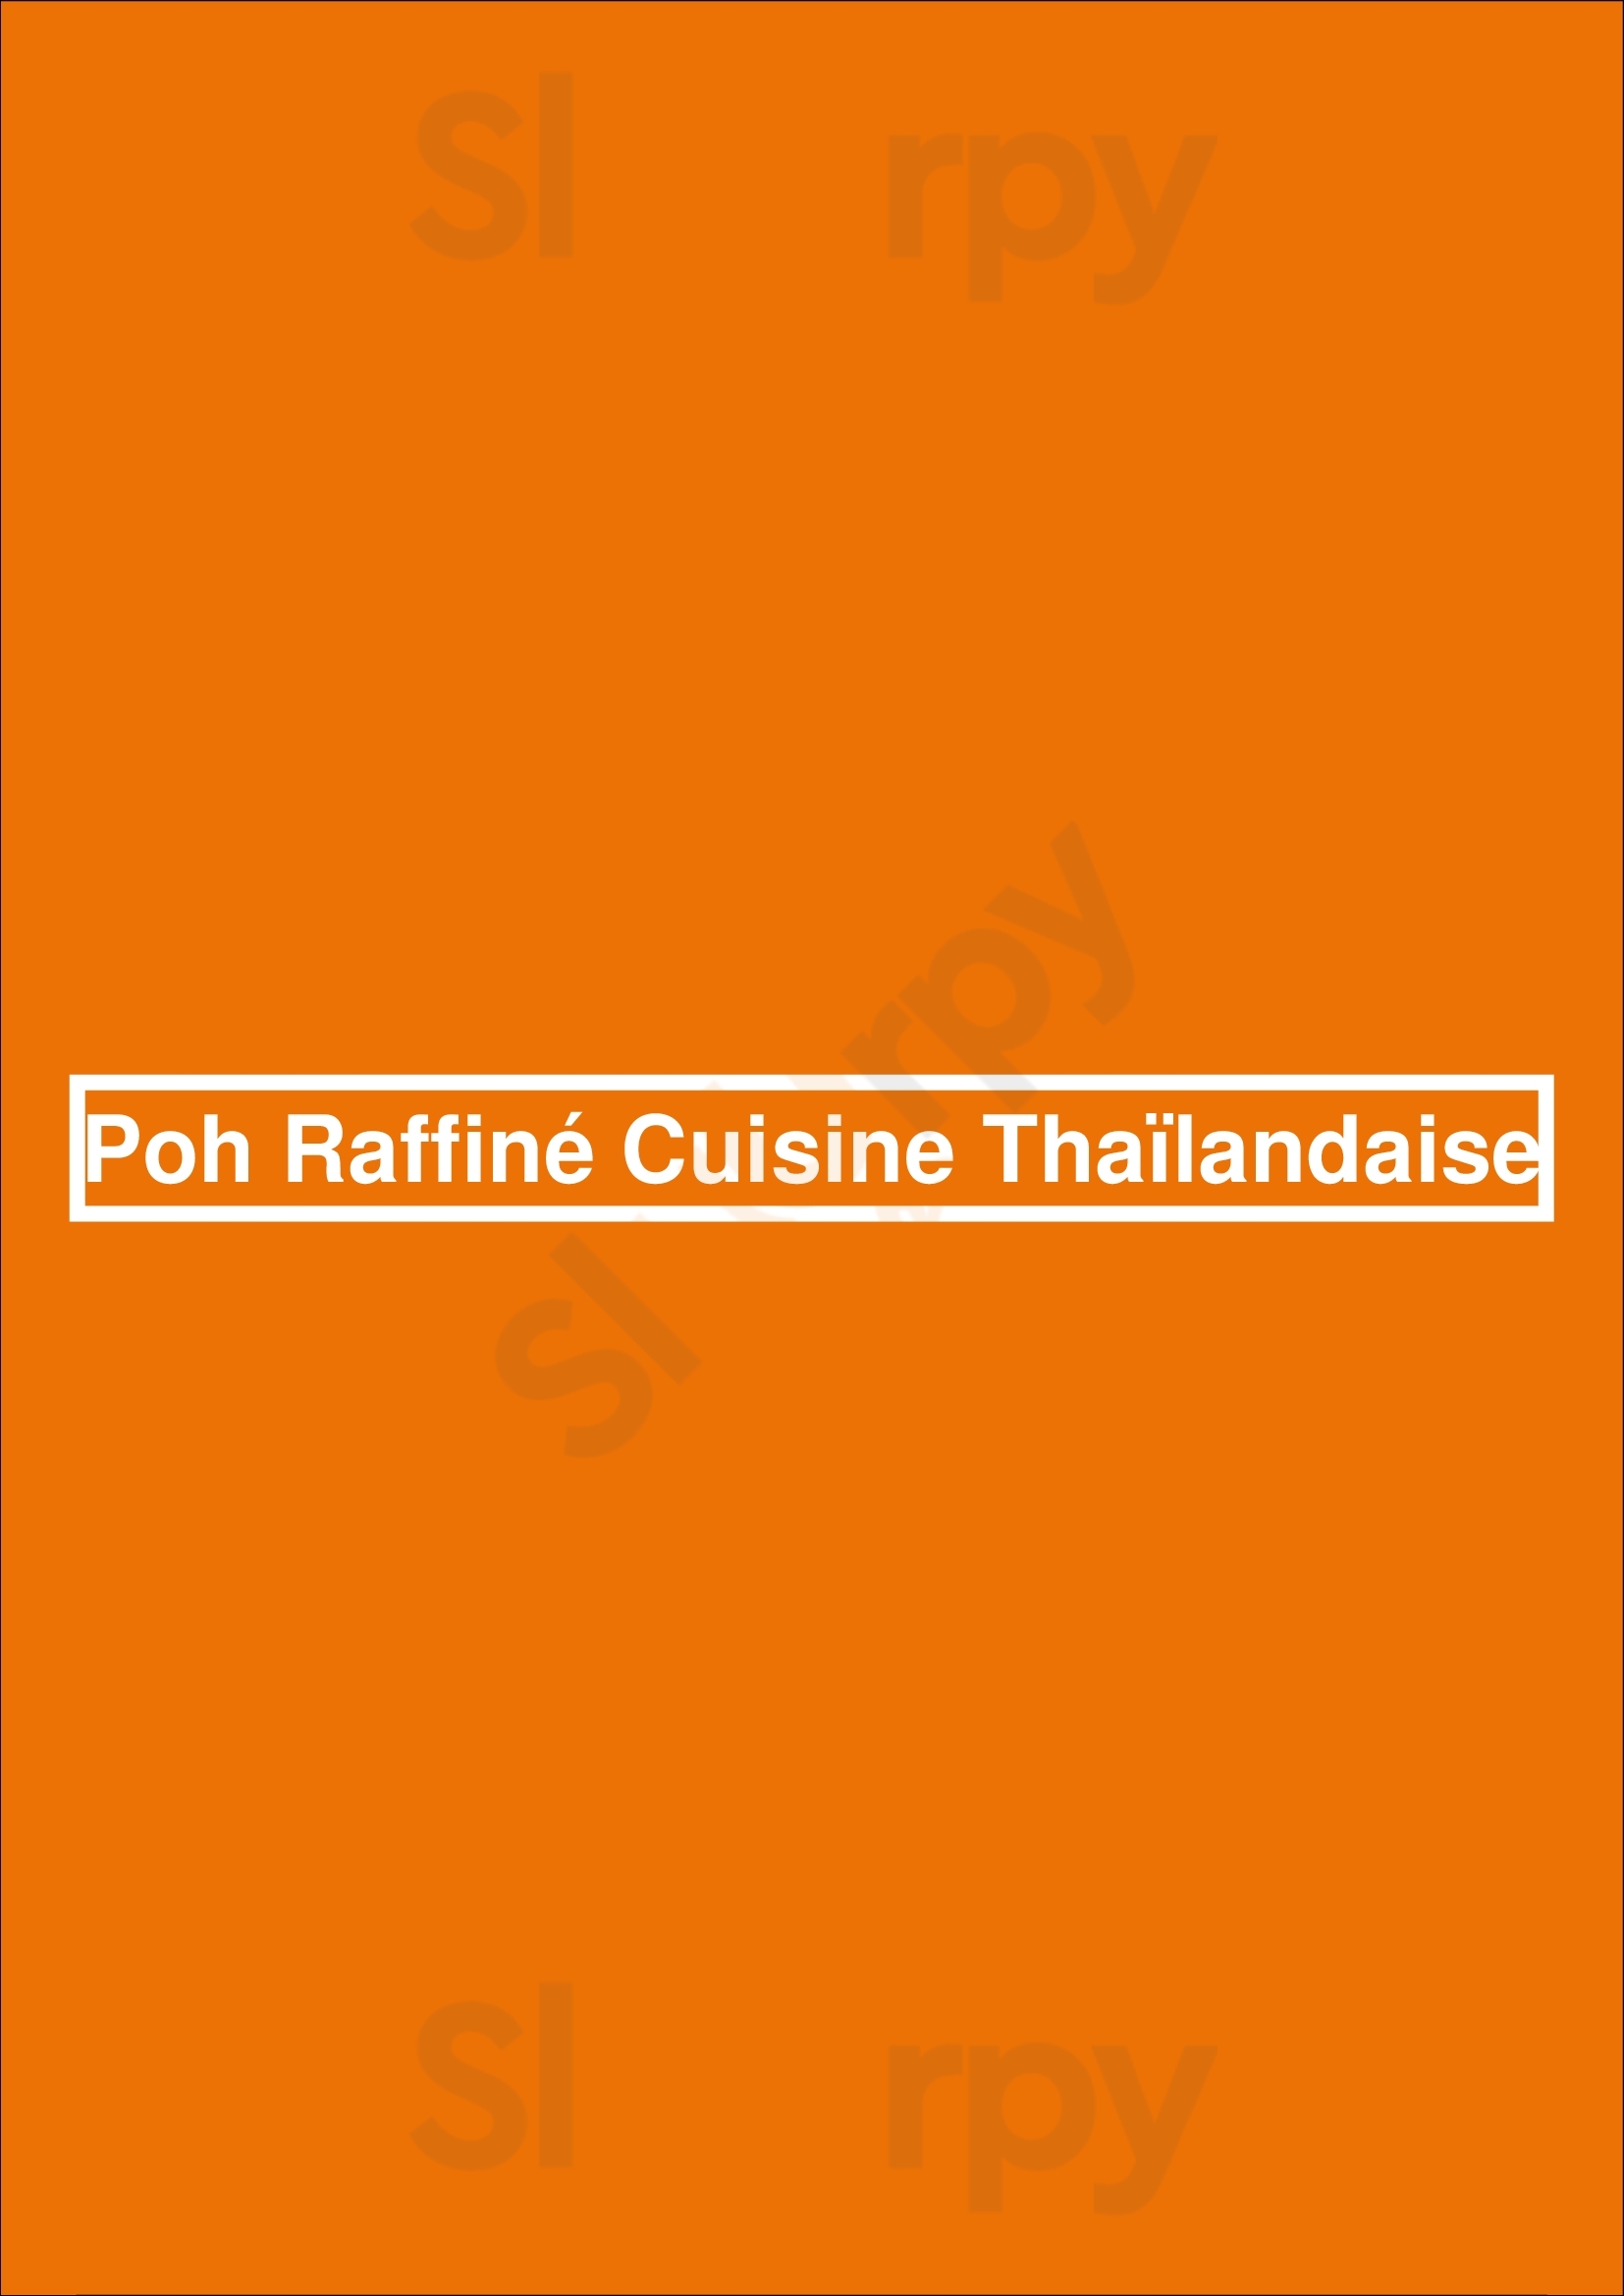 Poh Raffiné Cuisine Thaïlandaise Ixelles Menu - 1